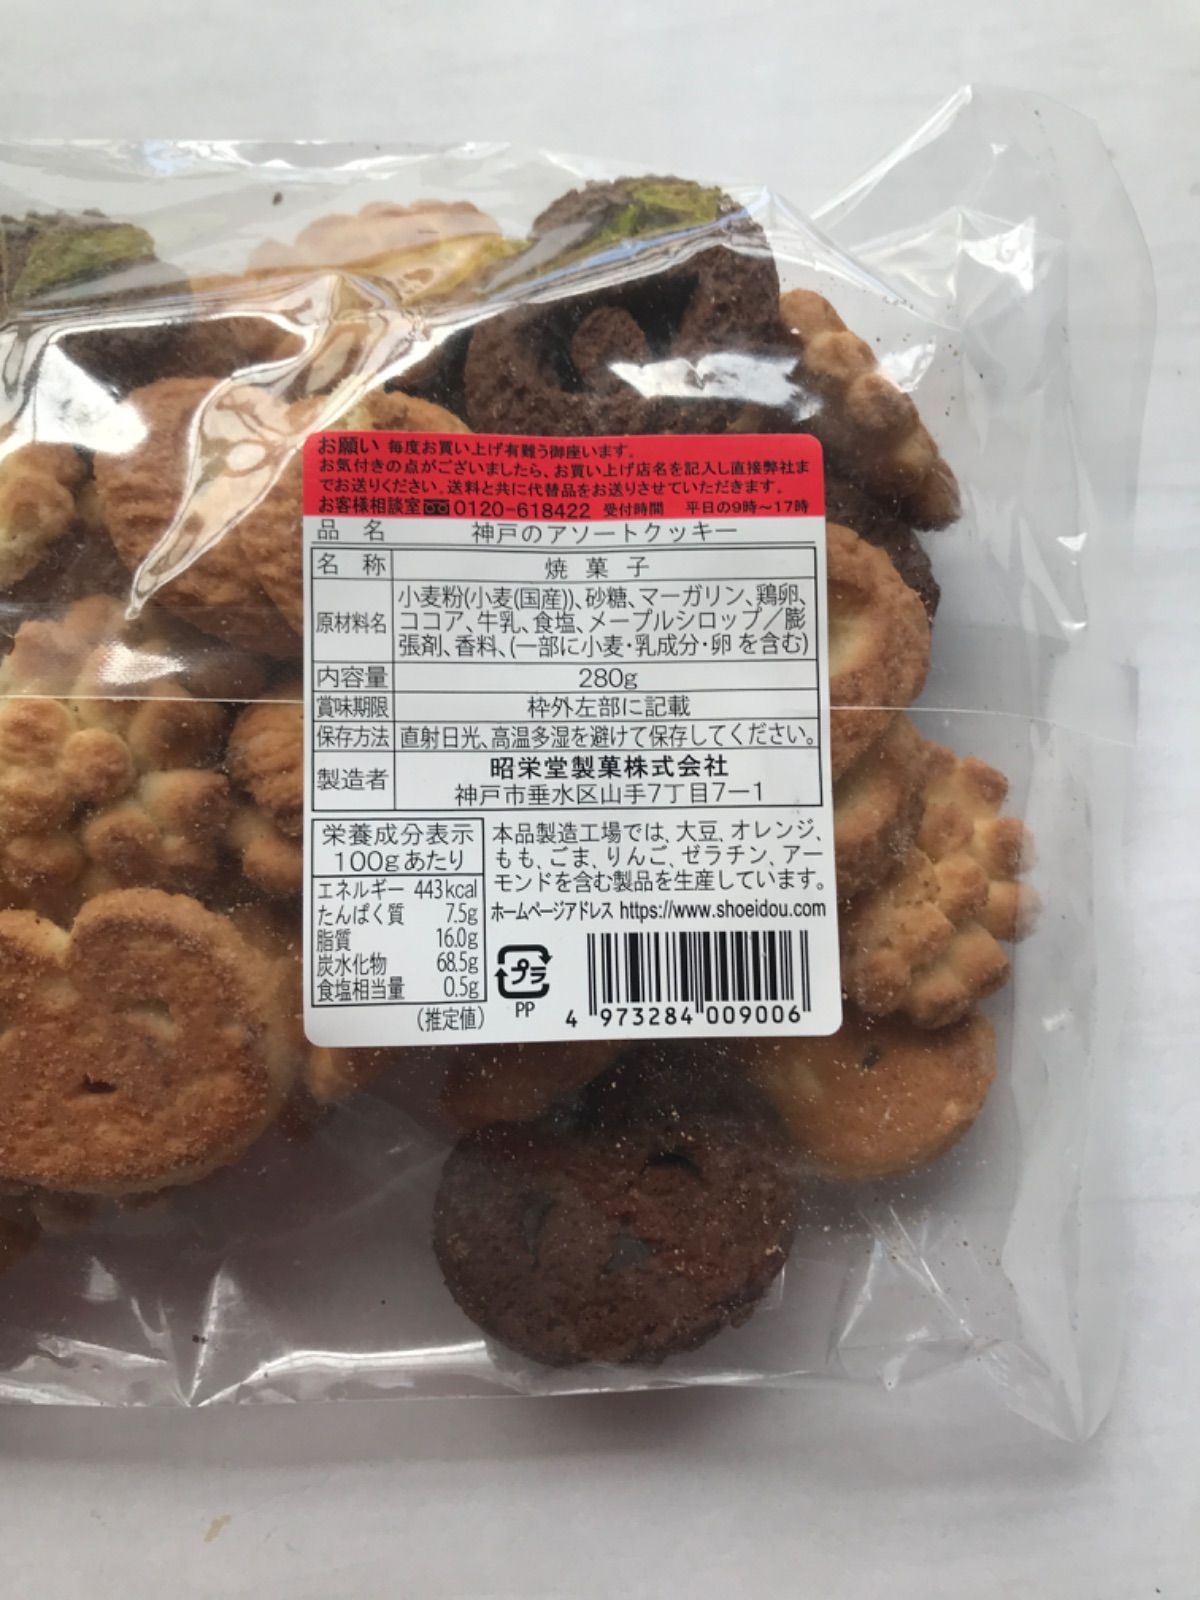 人気のファッションブランド！ 昭栄堂 神戸のアソートクッキー 280g 北海道産小麦粉を使用し無添加マーガリンで練り上げ バラエティーに富んだ アソートクッキーの大袋タイプ